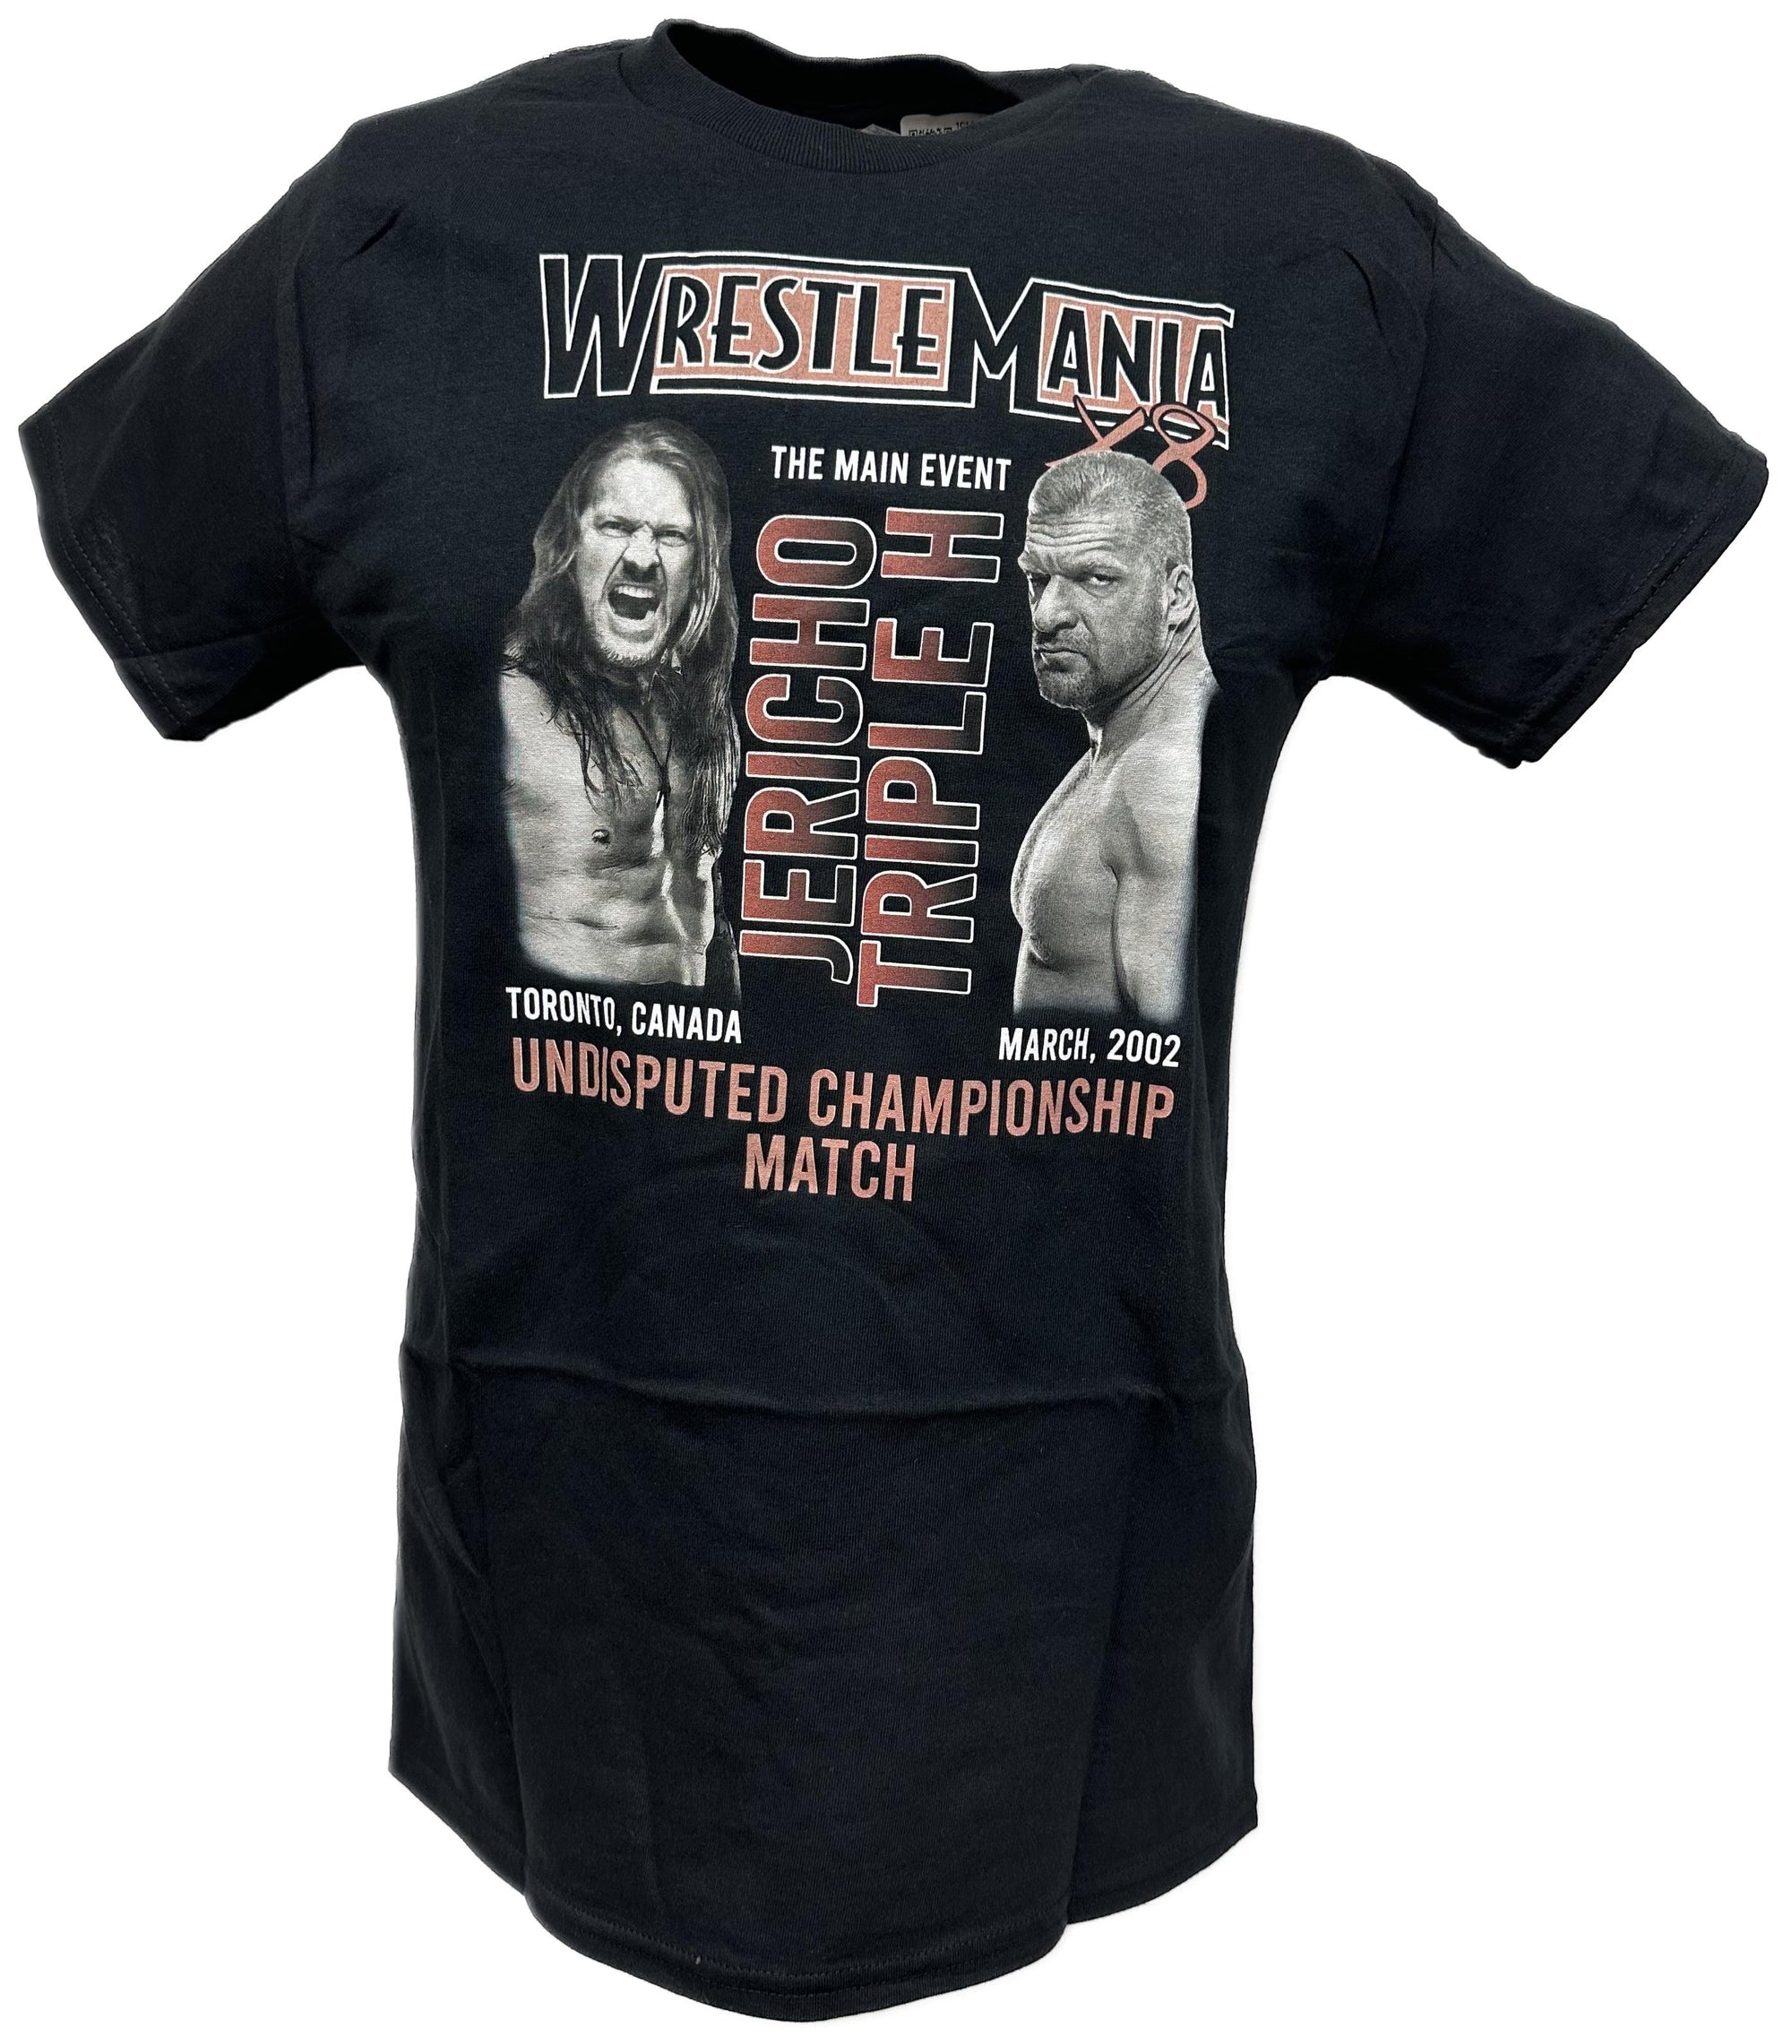 WrestleMania 18 X8 WWE Triple H vs Jericho Undisputed Championship Match T-shirt